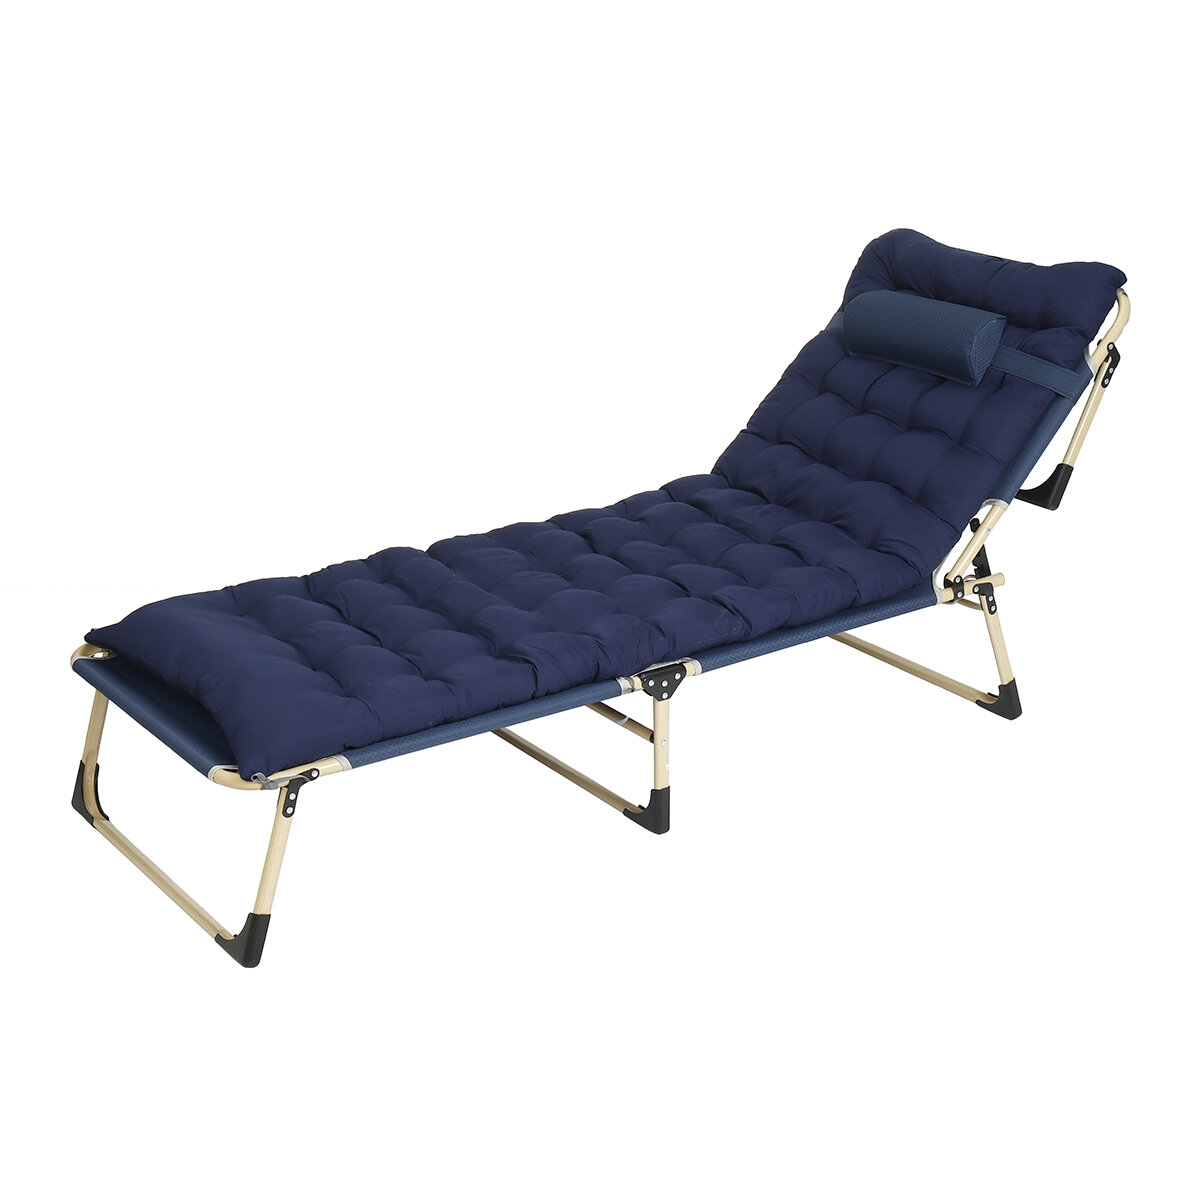 Размеры 193х68х30 см. Портативная складная кровать для отдыха на природе. Весовая нагрузка до 200 кг. Изготовлена из 1200D Оксфордской ткани. Также может использоваться как складное кресло для путешествий.